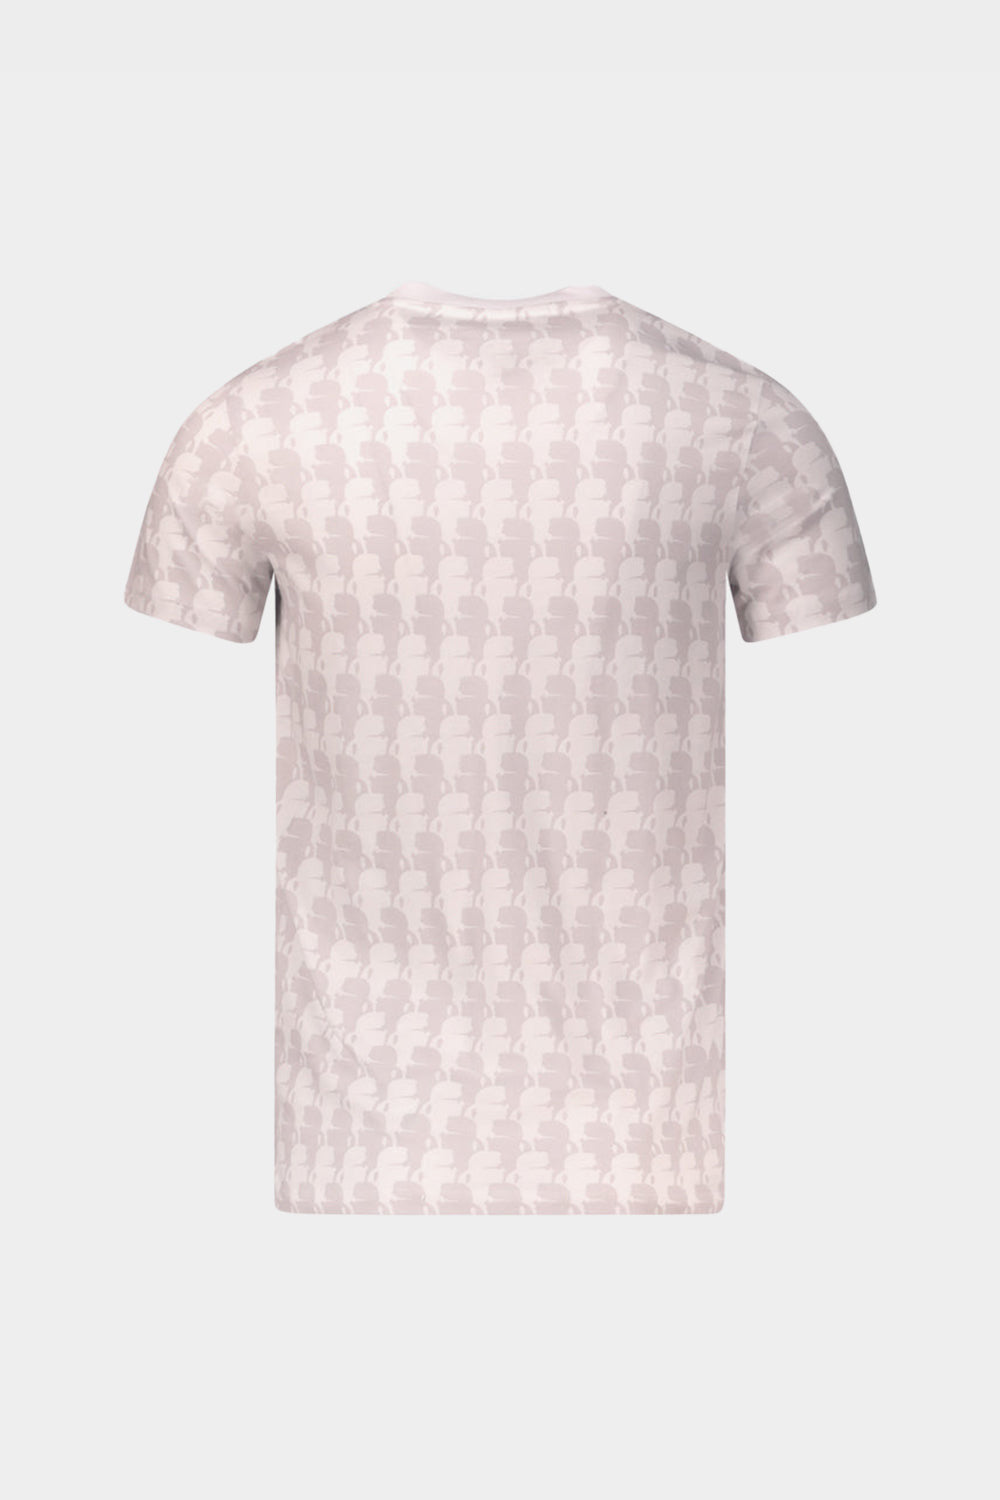 חולצת טי שירט לגברים מוטיב פרופיל KARL LAGERFELD KARL LAGERFELD Vendome online | ונדום .